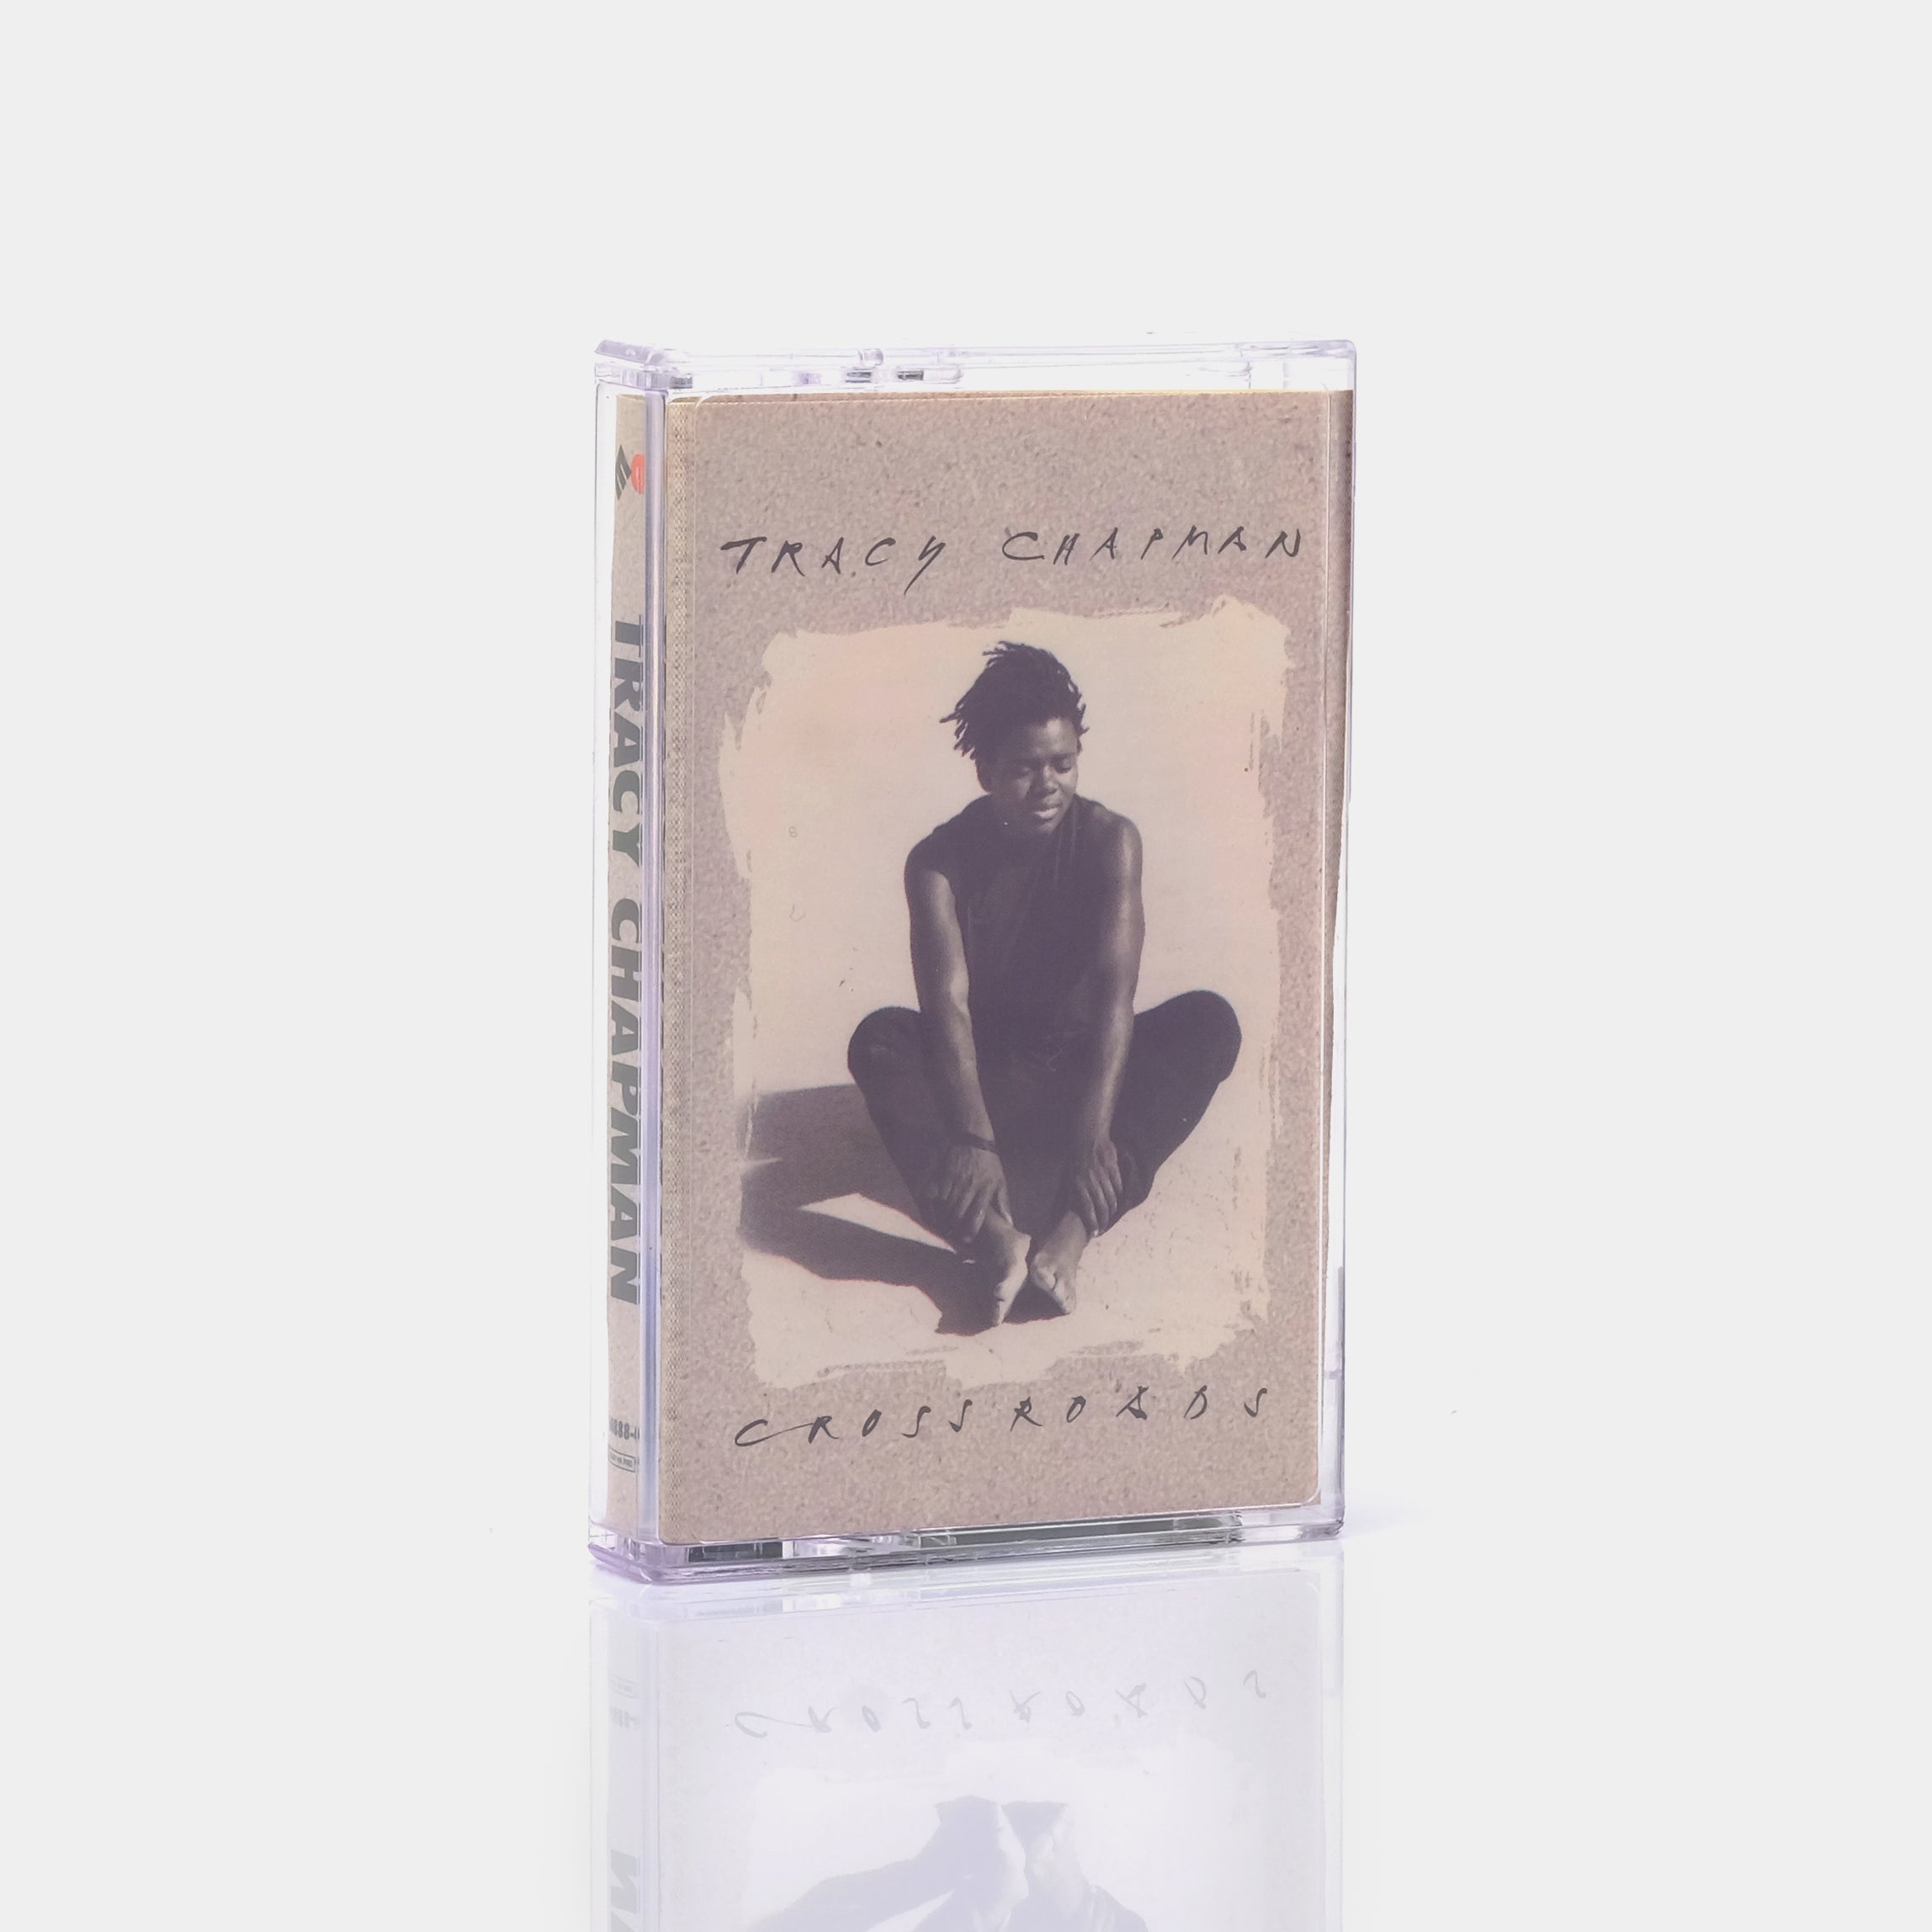 Tracy Chapman - Crossroads Cassette Tape